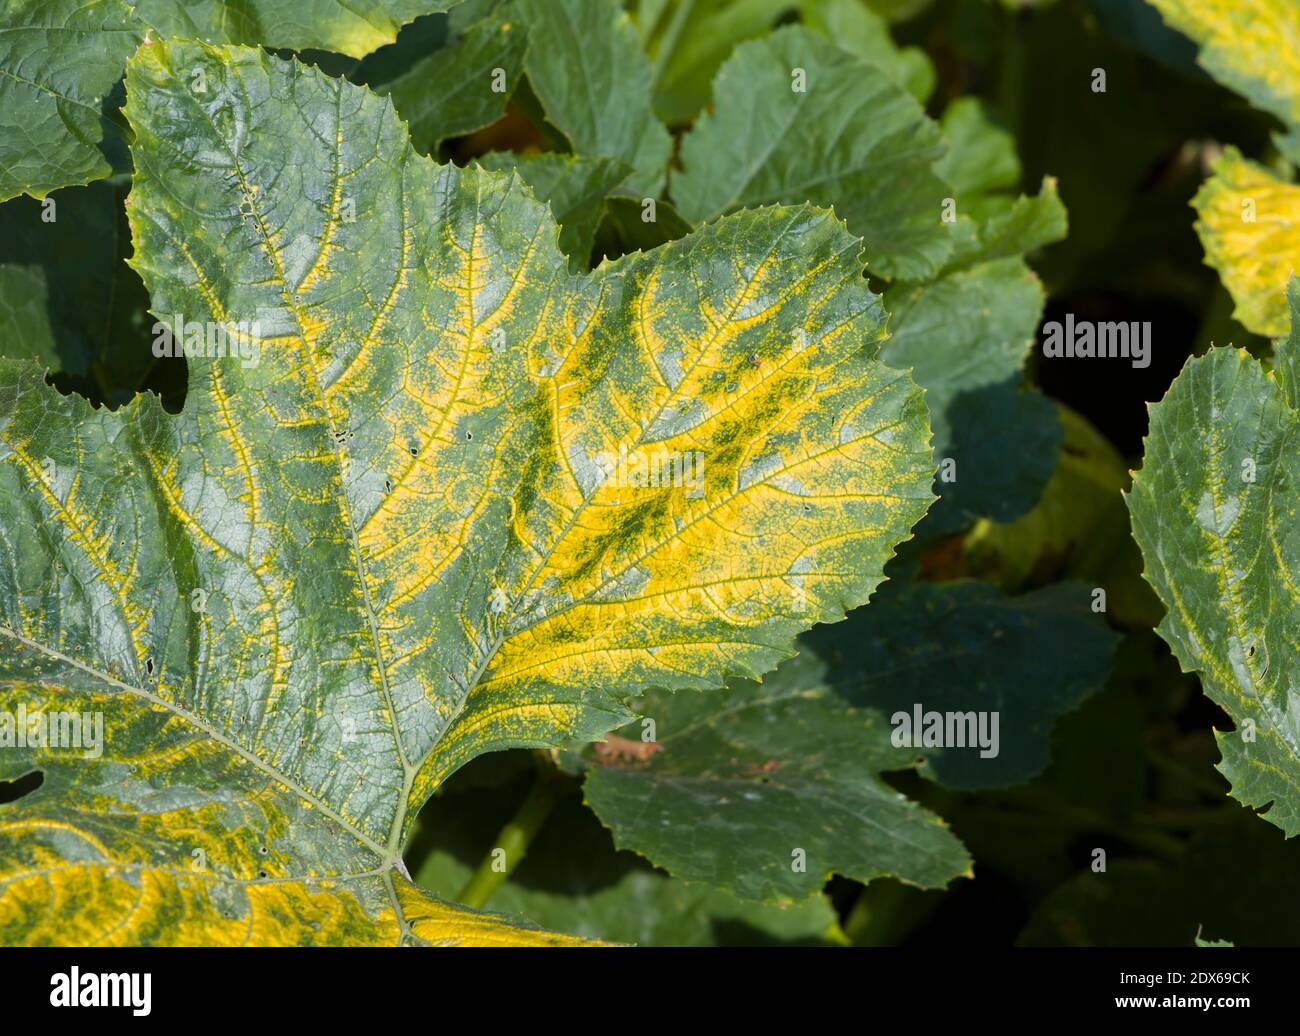 Virus de la mosaïque (virus de la mosaïque du courgette jaune ou virus de la mosaïque du concombre) Culture sur une plante de courgette (zucchini) dans un jardin britannique Banque D'Images